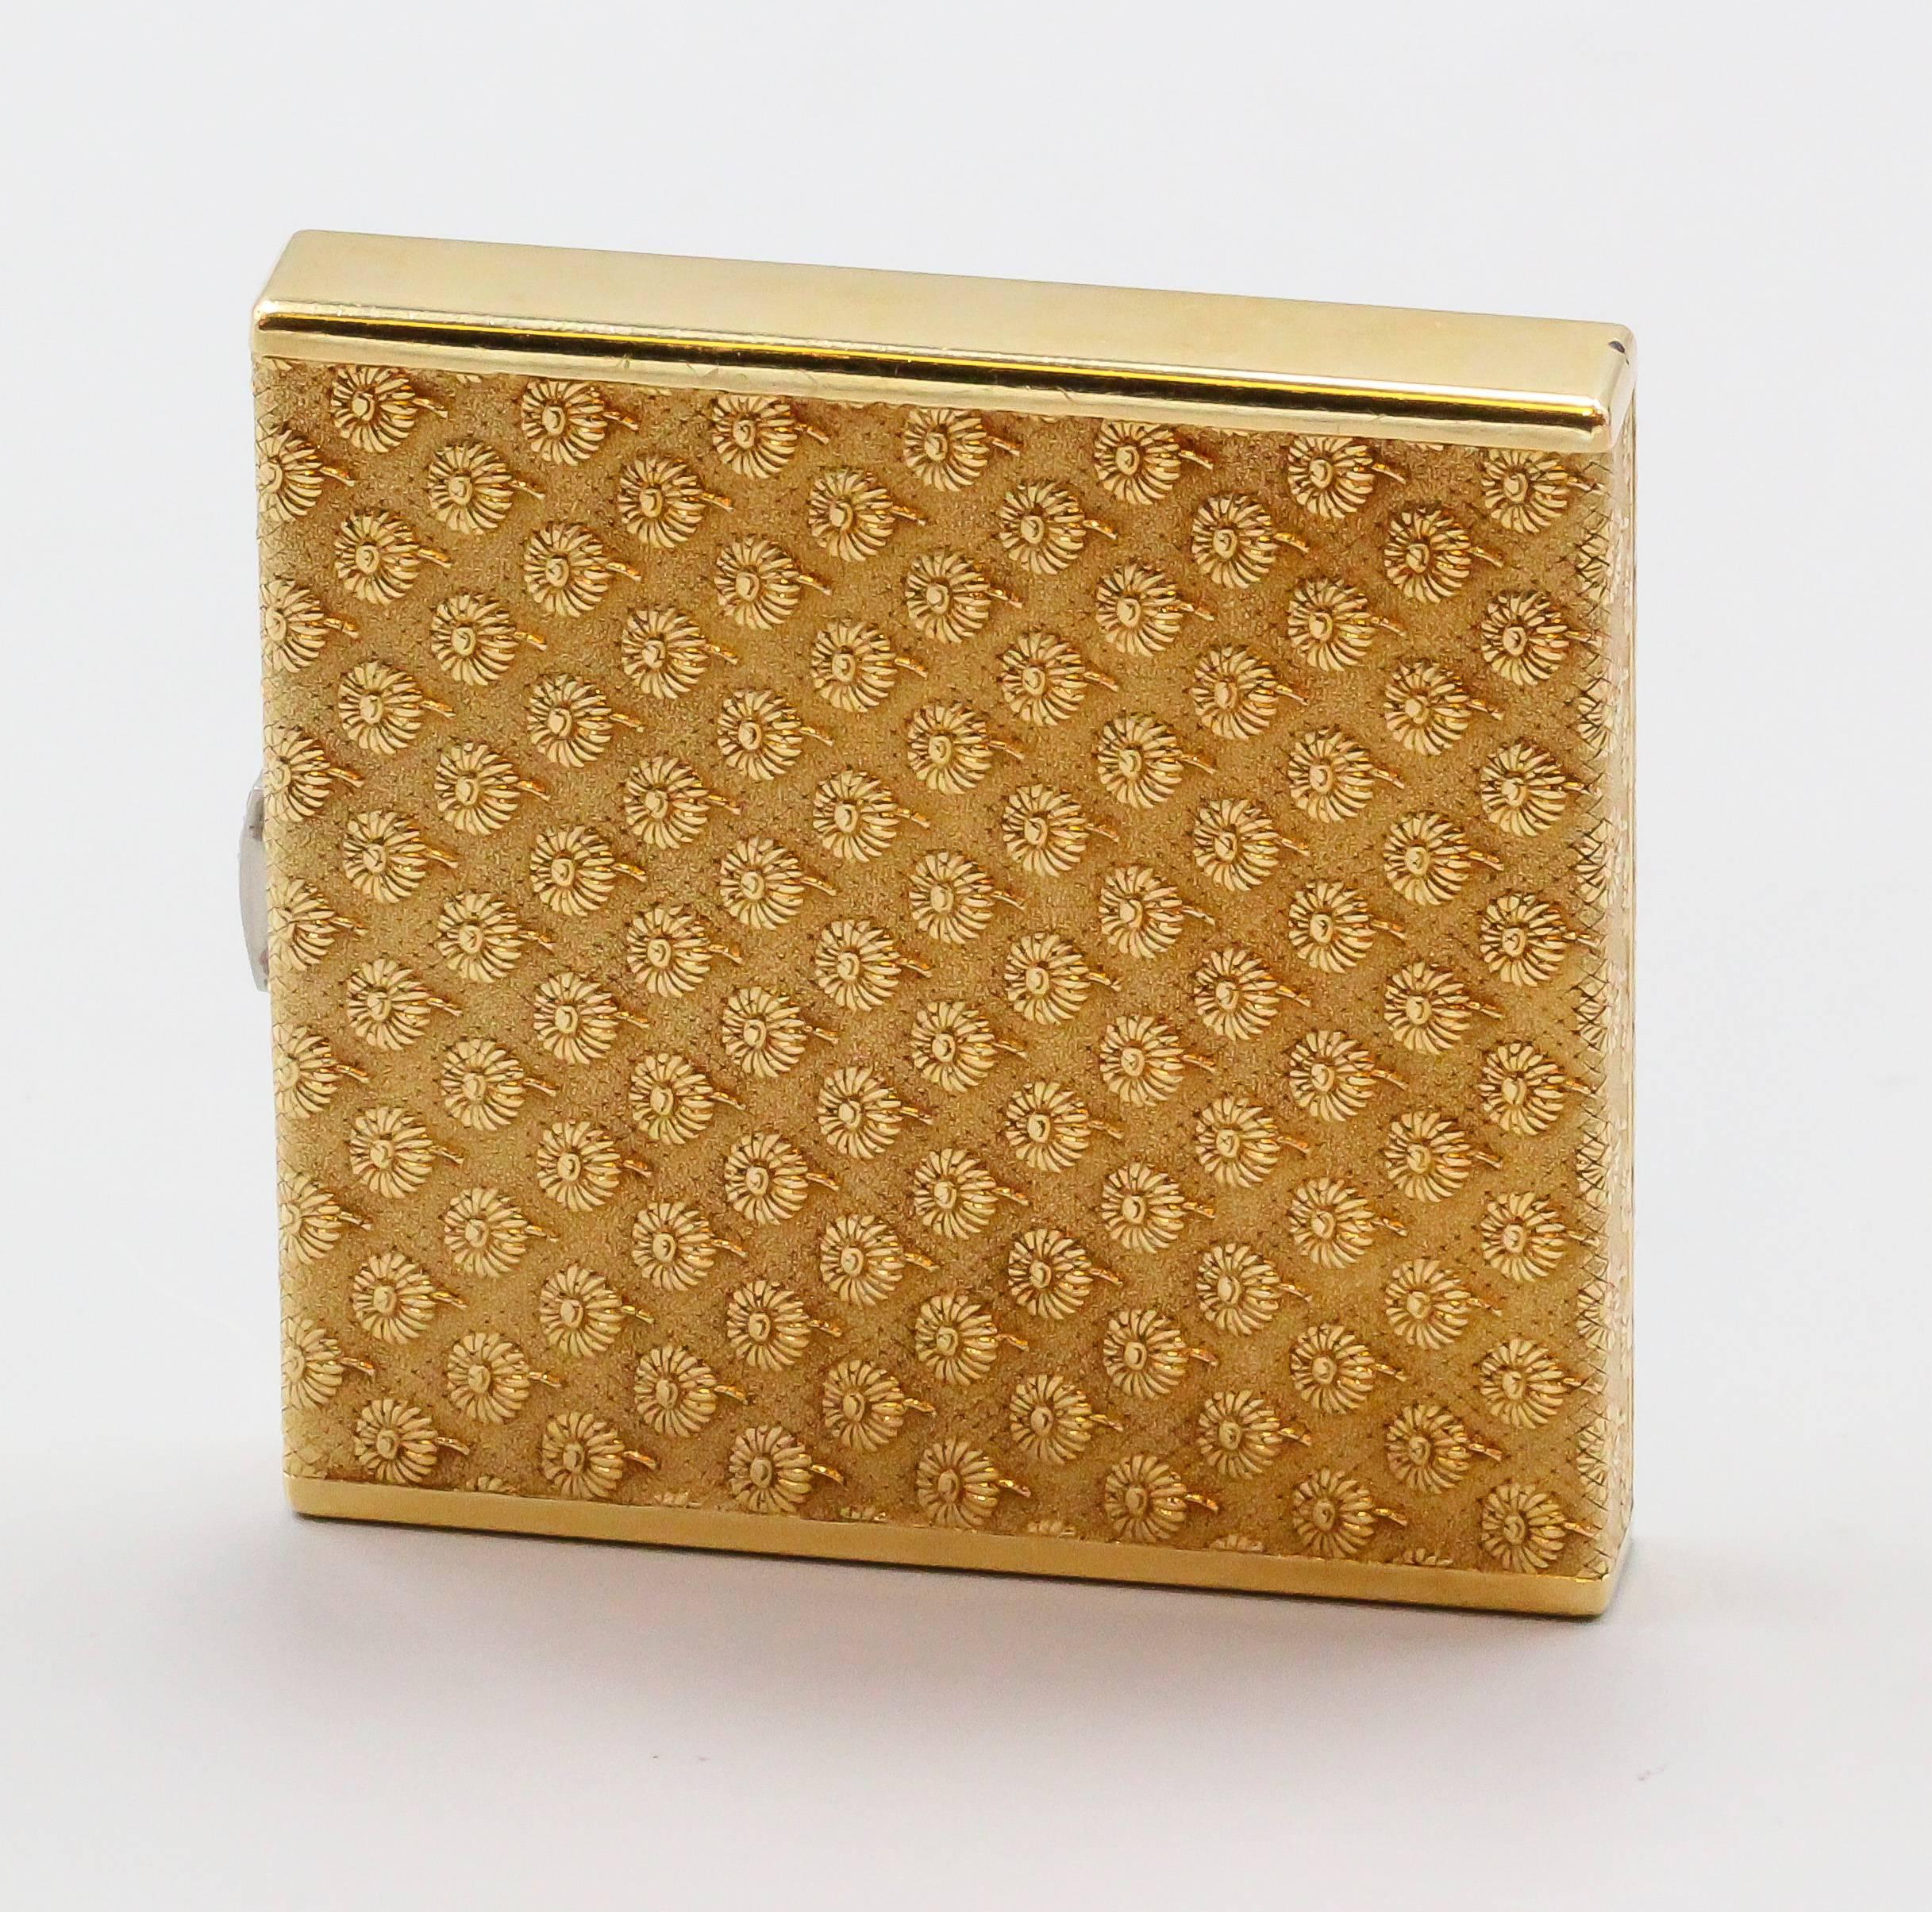 Boucheron Diamond Gold Textured Flower Motif Compact Case 1